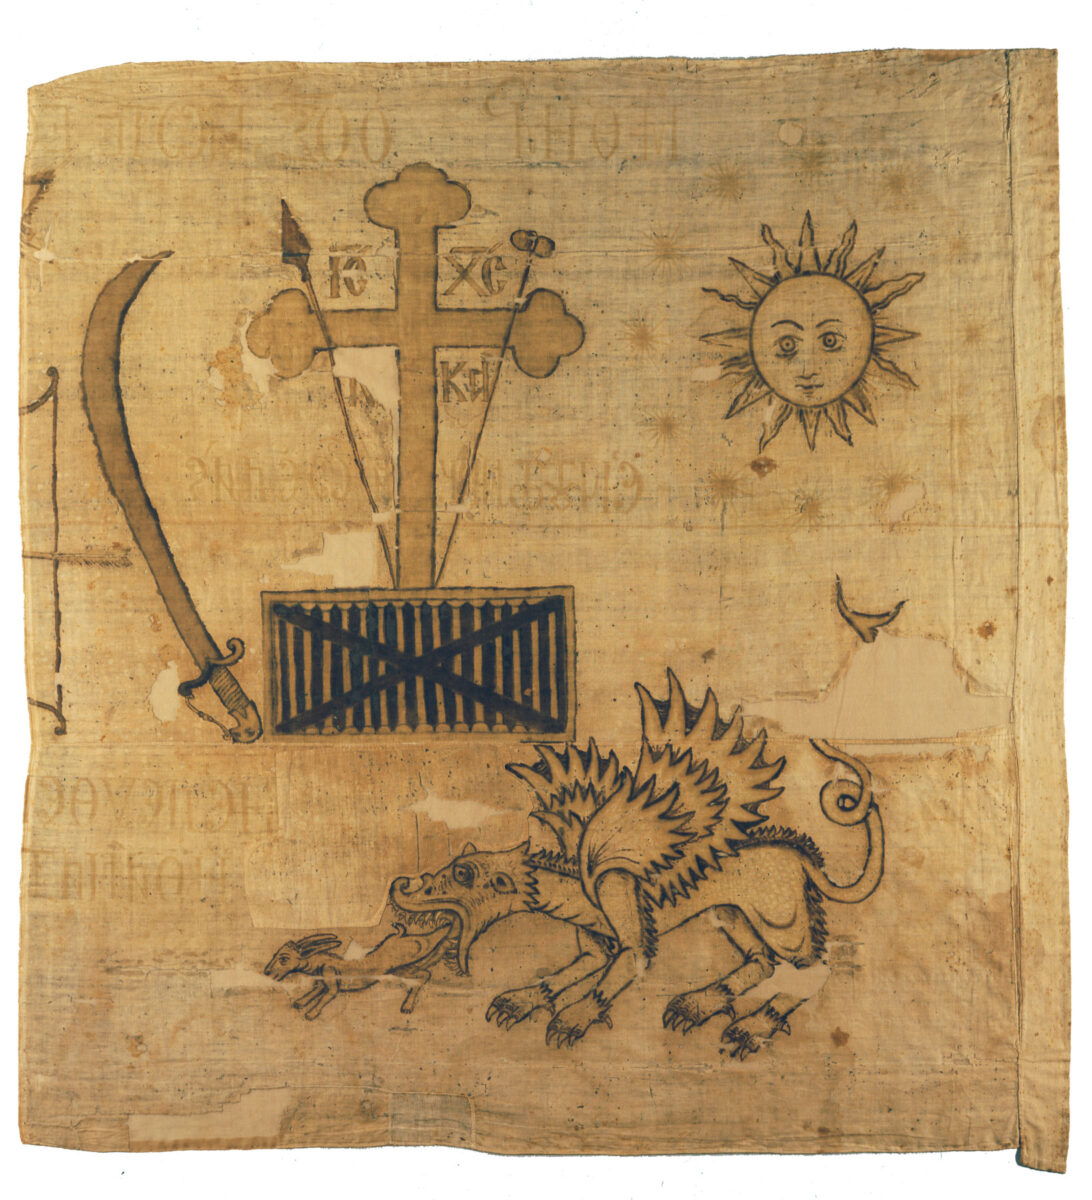 Σημαία Ελευθερίας του Μανιάτη οπλαρχηγού Τζανετάκη Γρηγοράκη (1785–1868), ο οποίος με το στρατιωτικό του σώμα έλαβε μέρος στην πολιορκία και στην άλωση της Μονεμβασίας (15 Μαρτίου – 23 Ιουλίου 1821). Φέρει σύμβολα της Φιλικής Εταιρείας, αλληγορικές παραστάσεις και αναγραφές. Αντίγραφο (ευγενική παραχώρηση της Μαιρηλί Χαραμή).